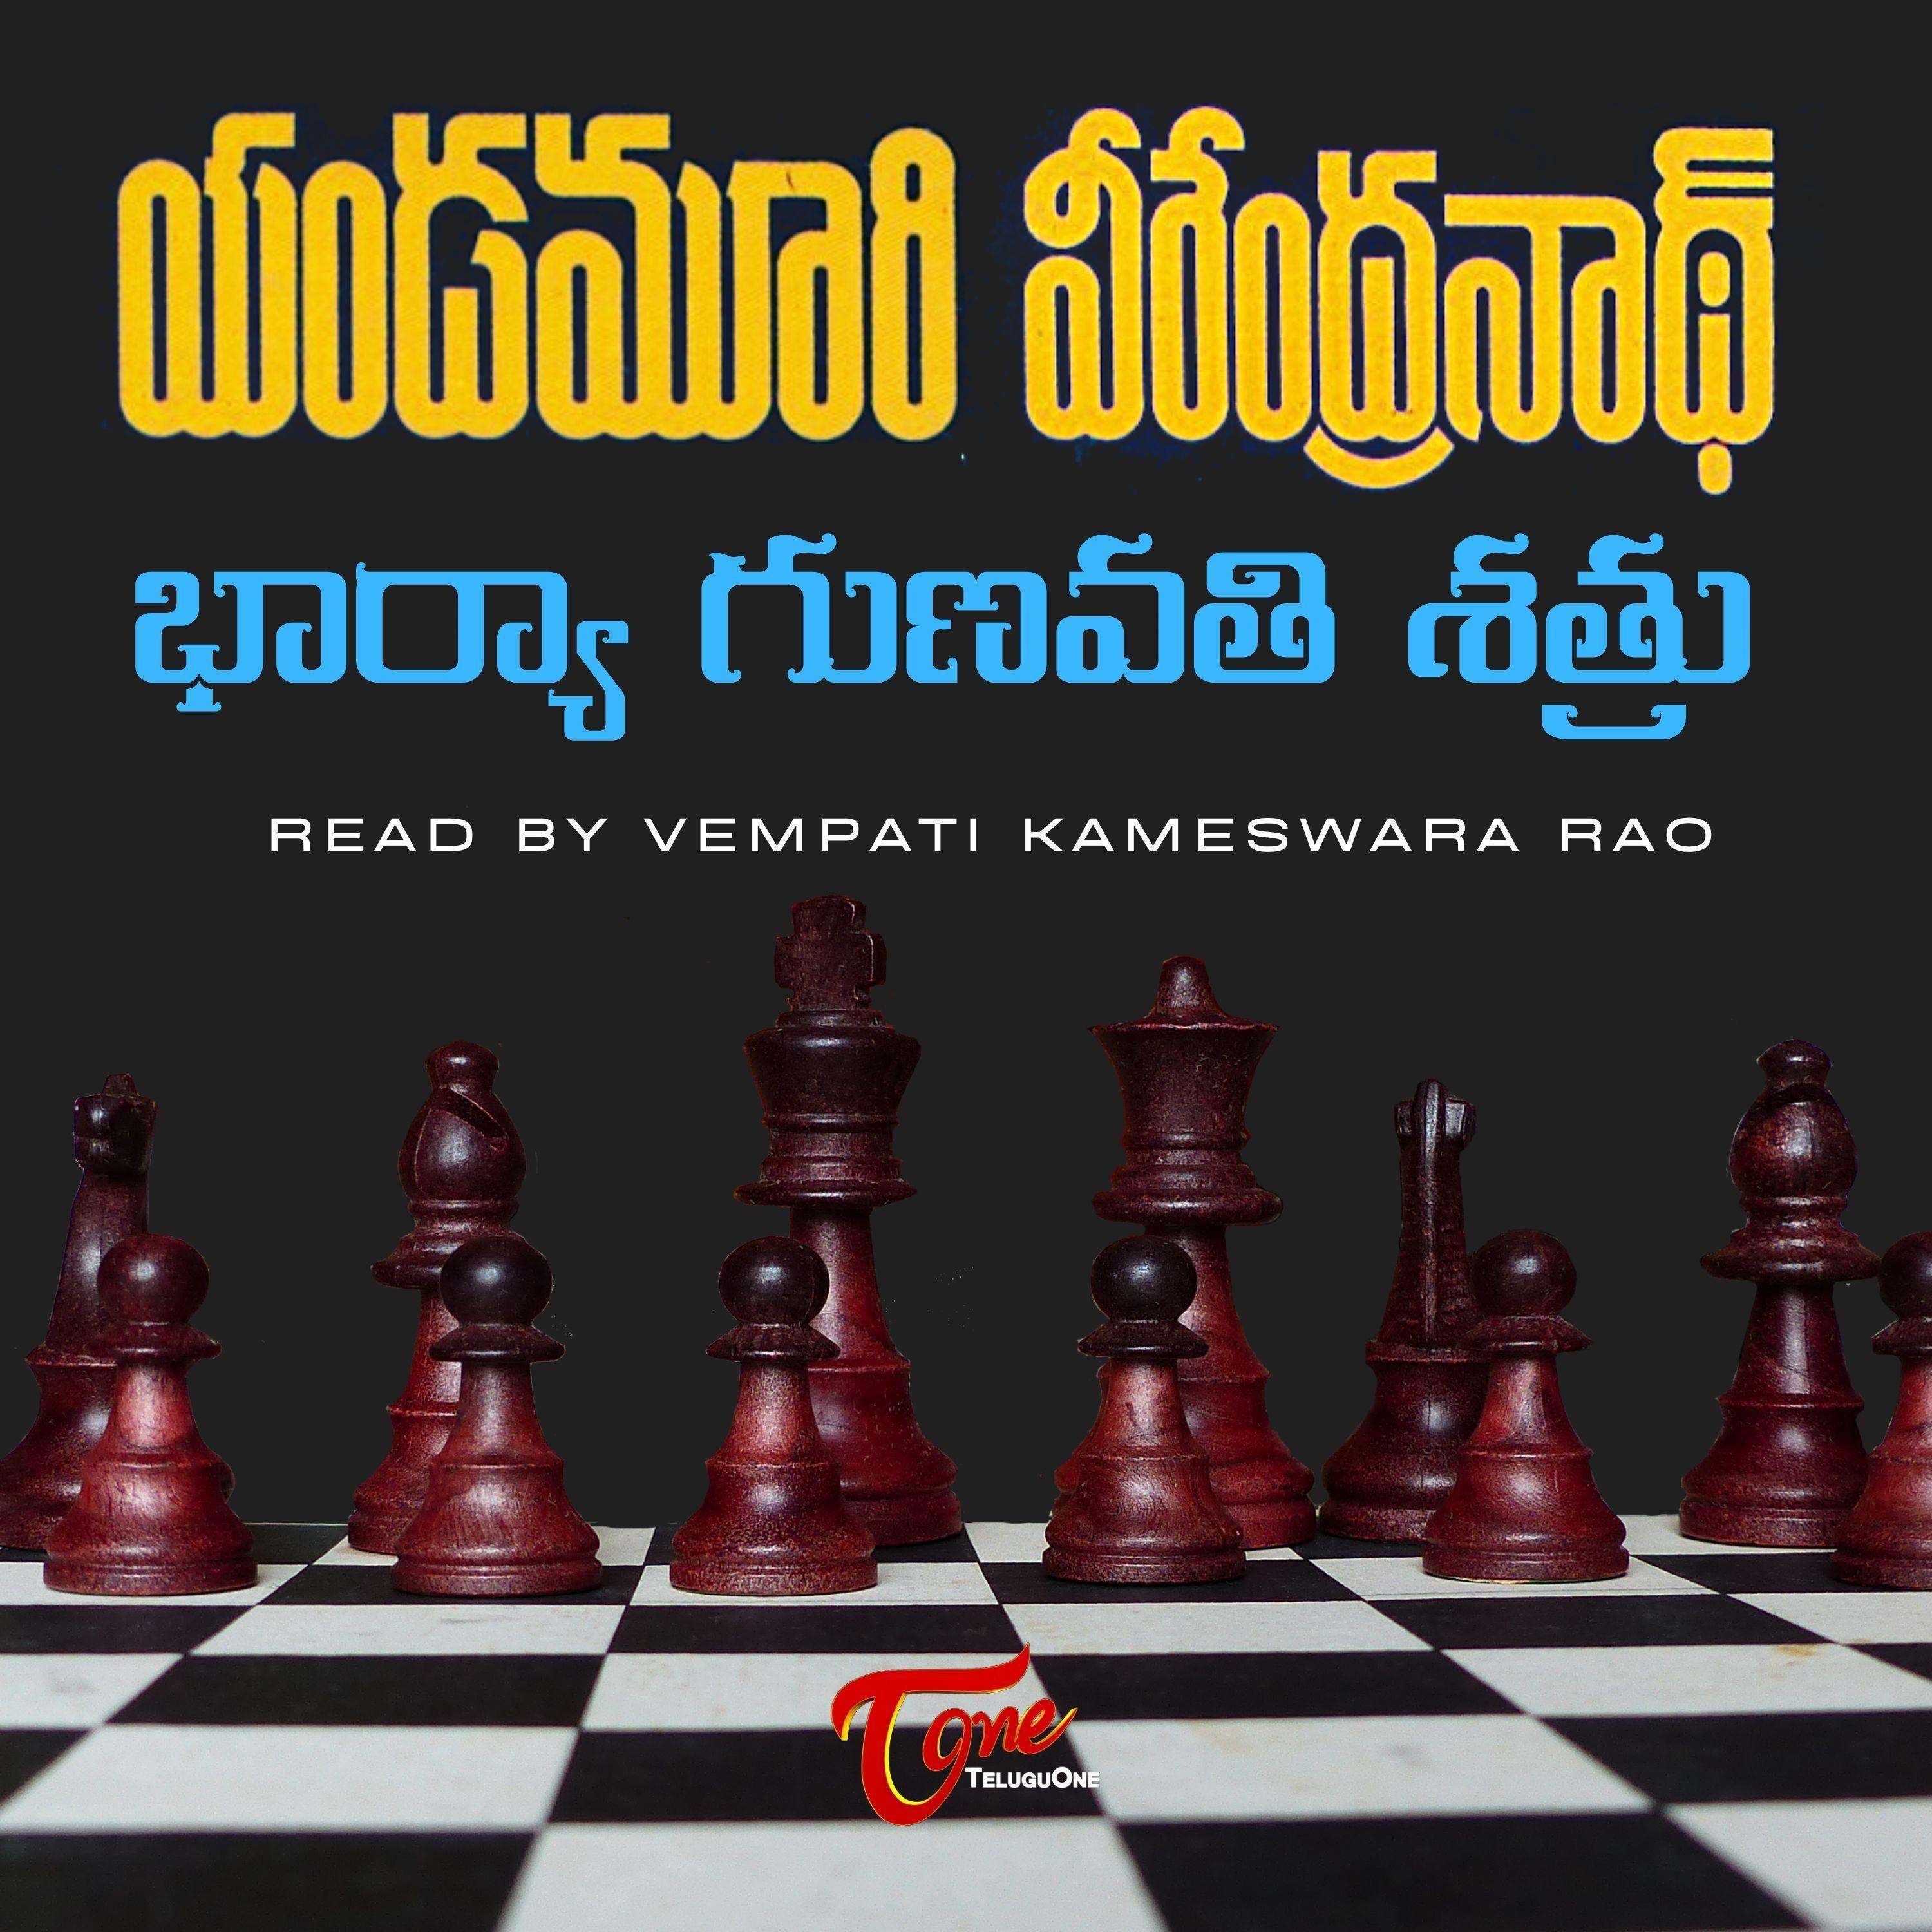 Yandamoori Veerendranath - Bharya Gunavathi Shatru (Telugu audio book)